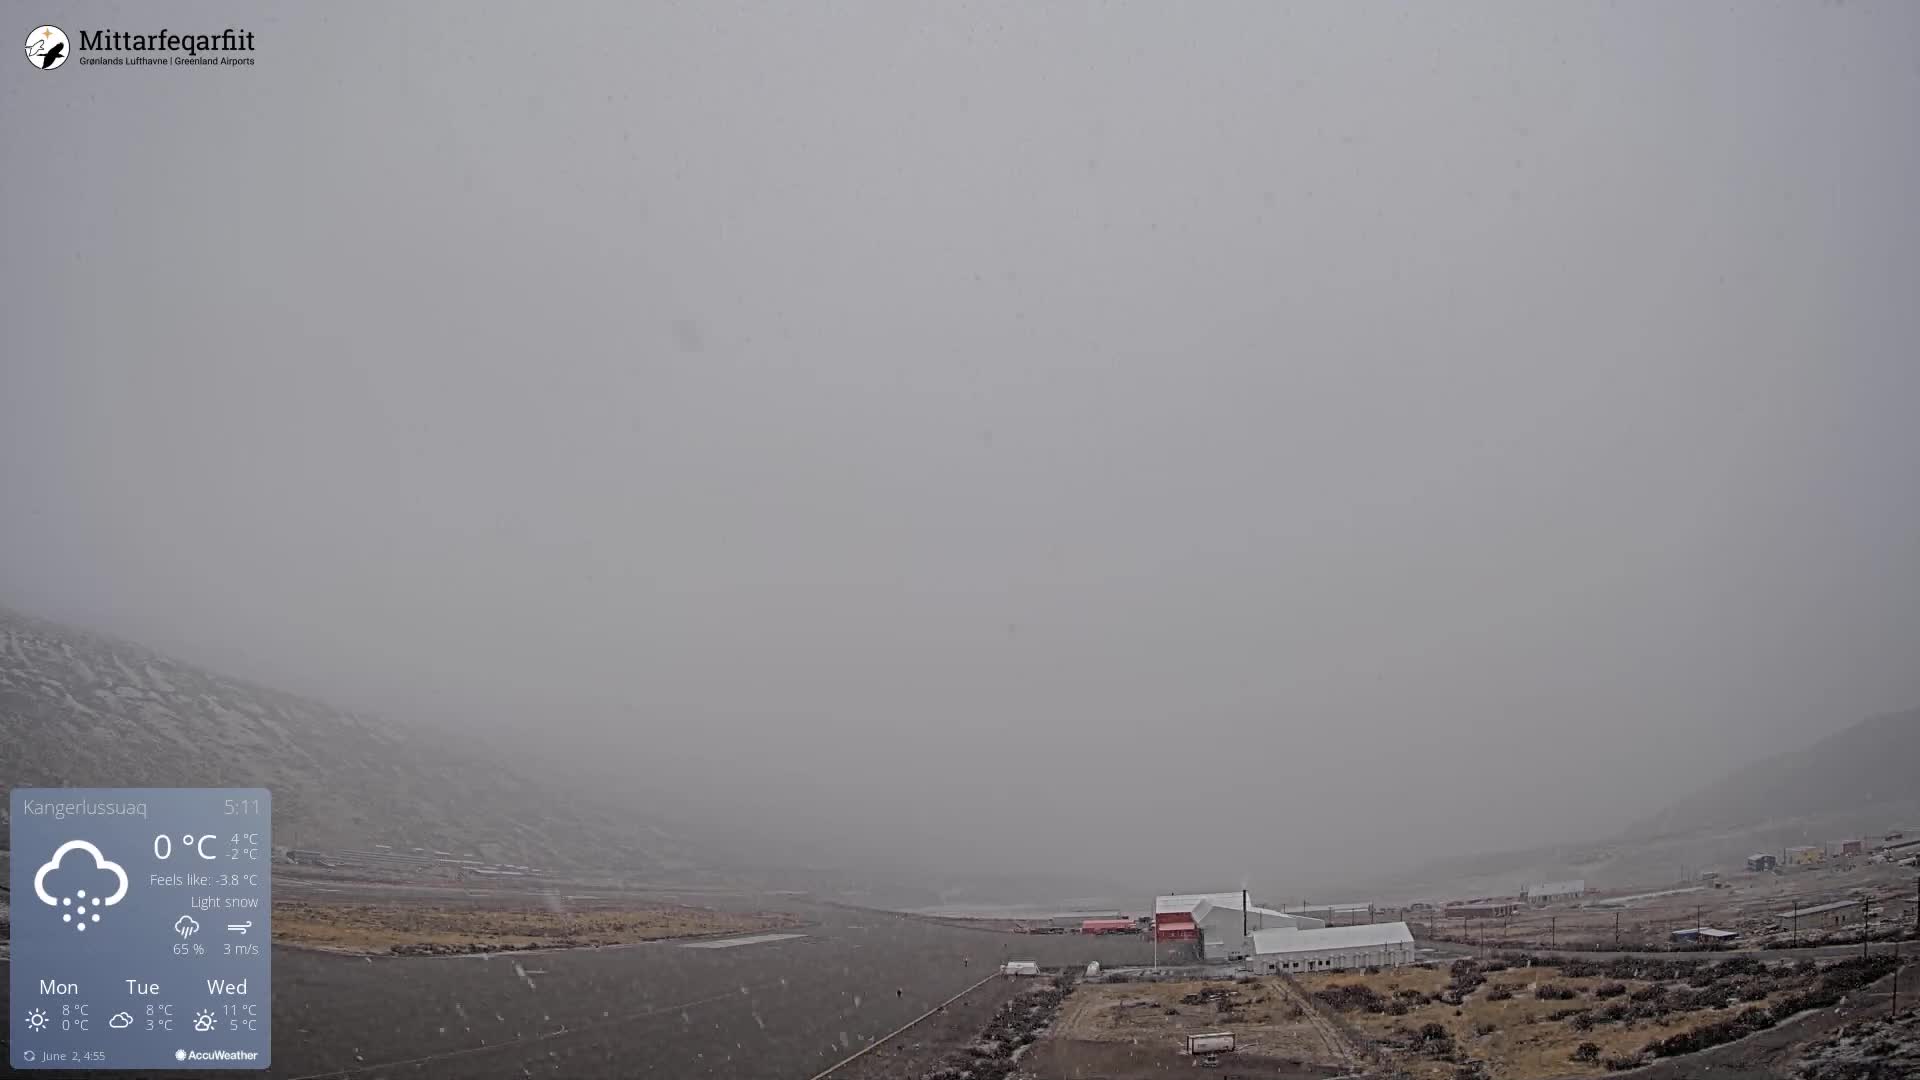 Kangerlussuaq Mo. 05:35